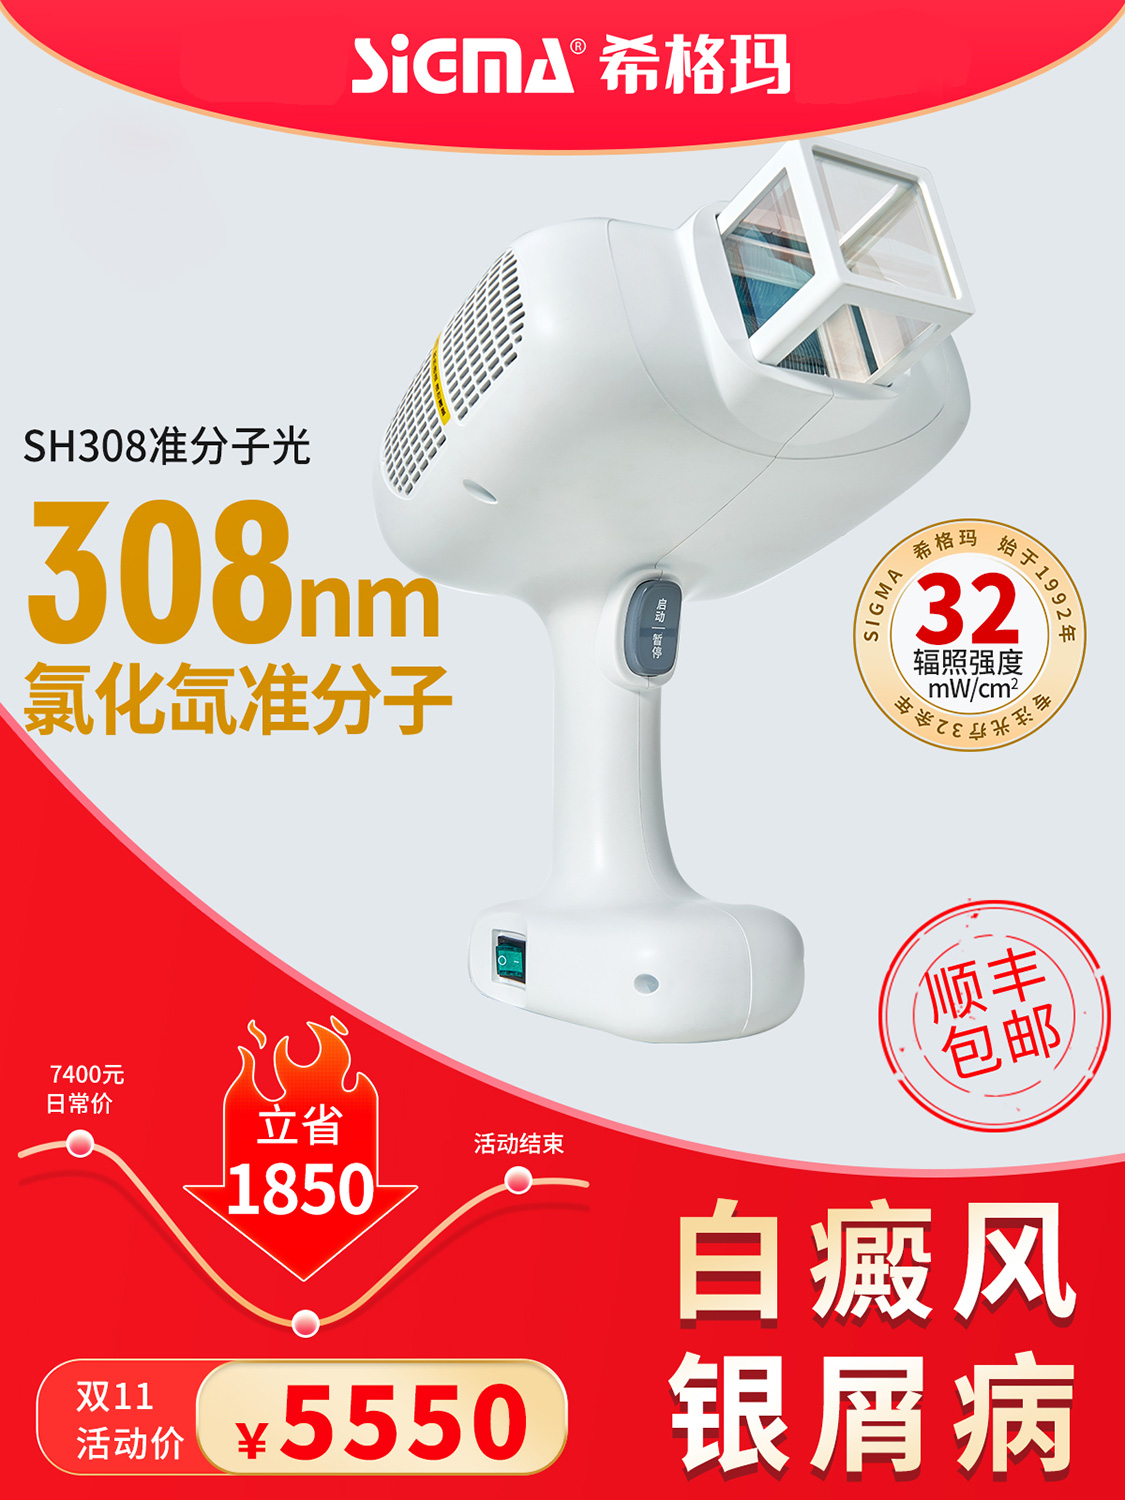 SH308-600.jpg